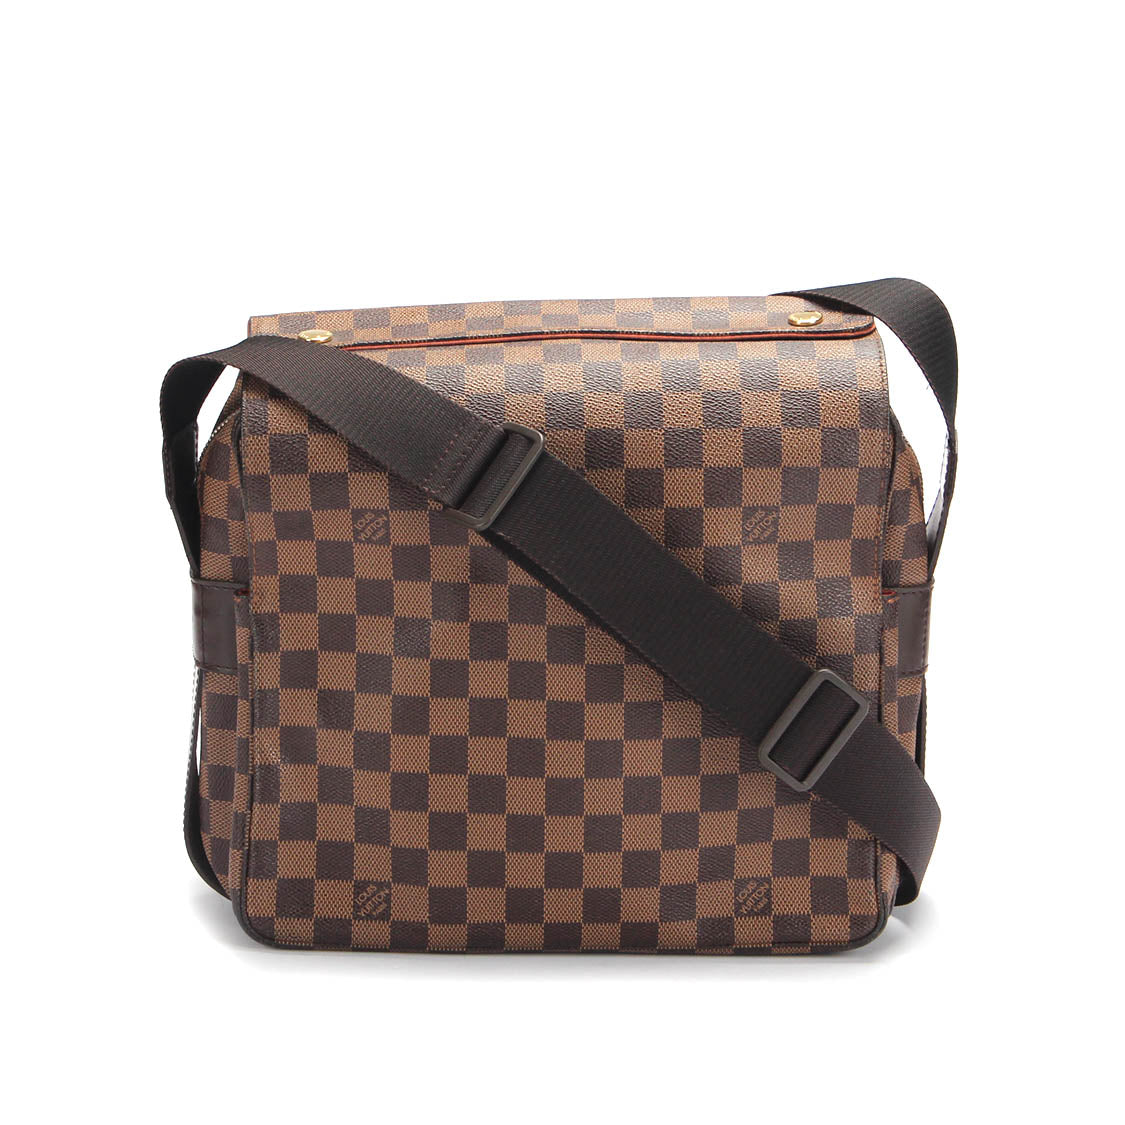 Louis Vuitton Damier Ebene Naviglio Canvas Crossbody Bag in Good condition